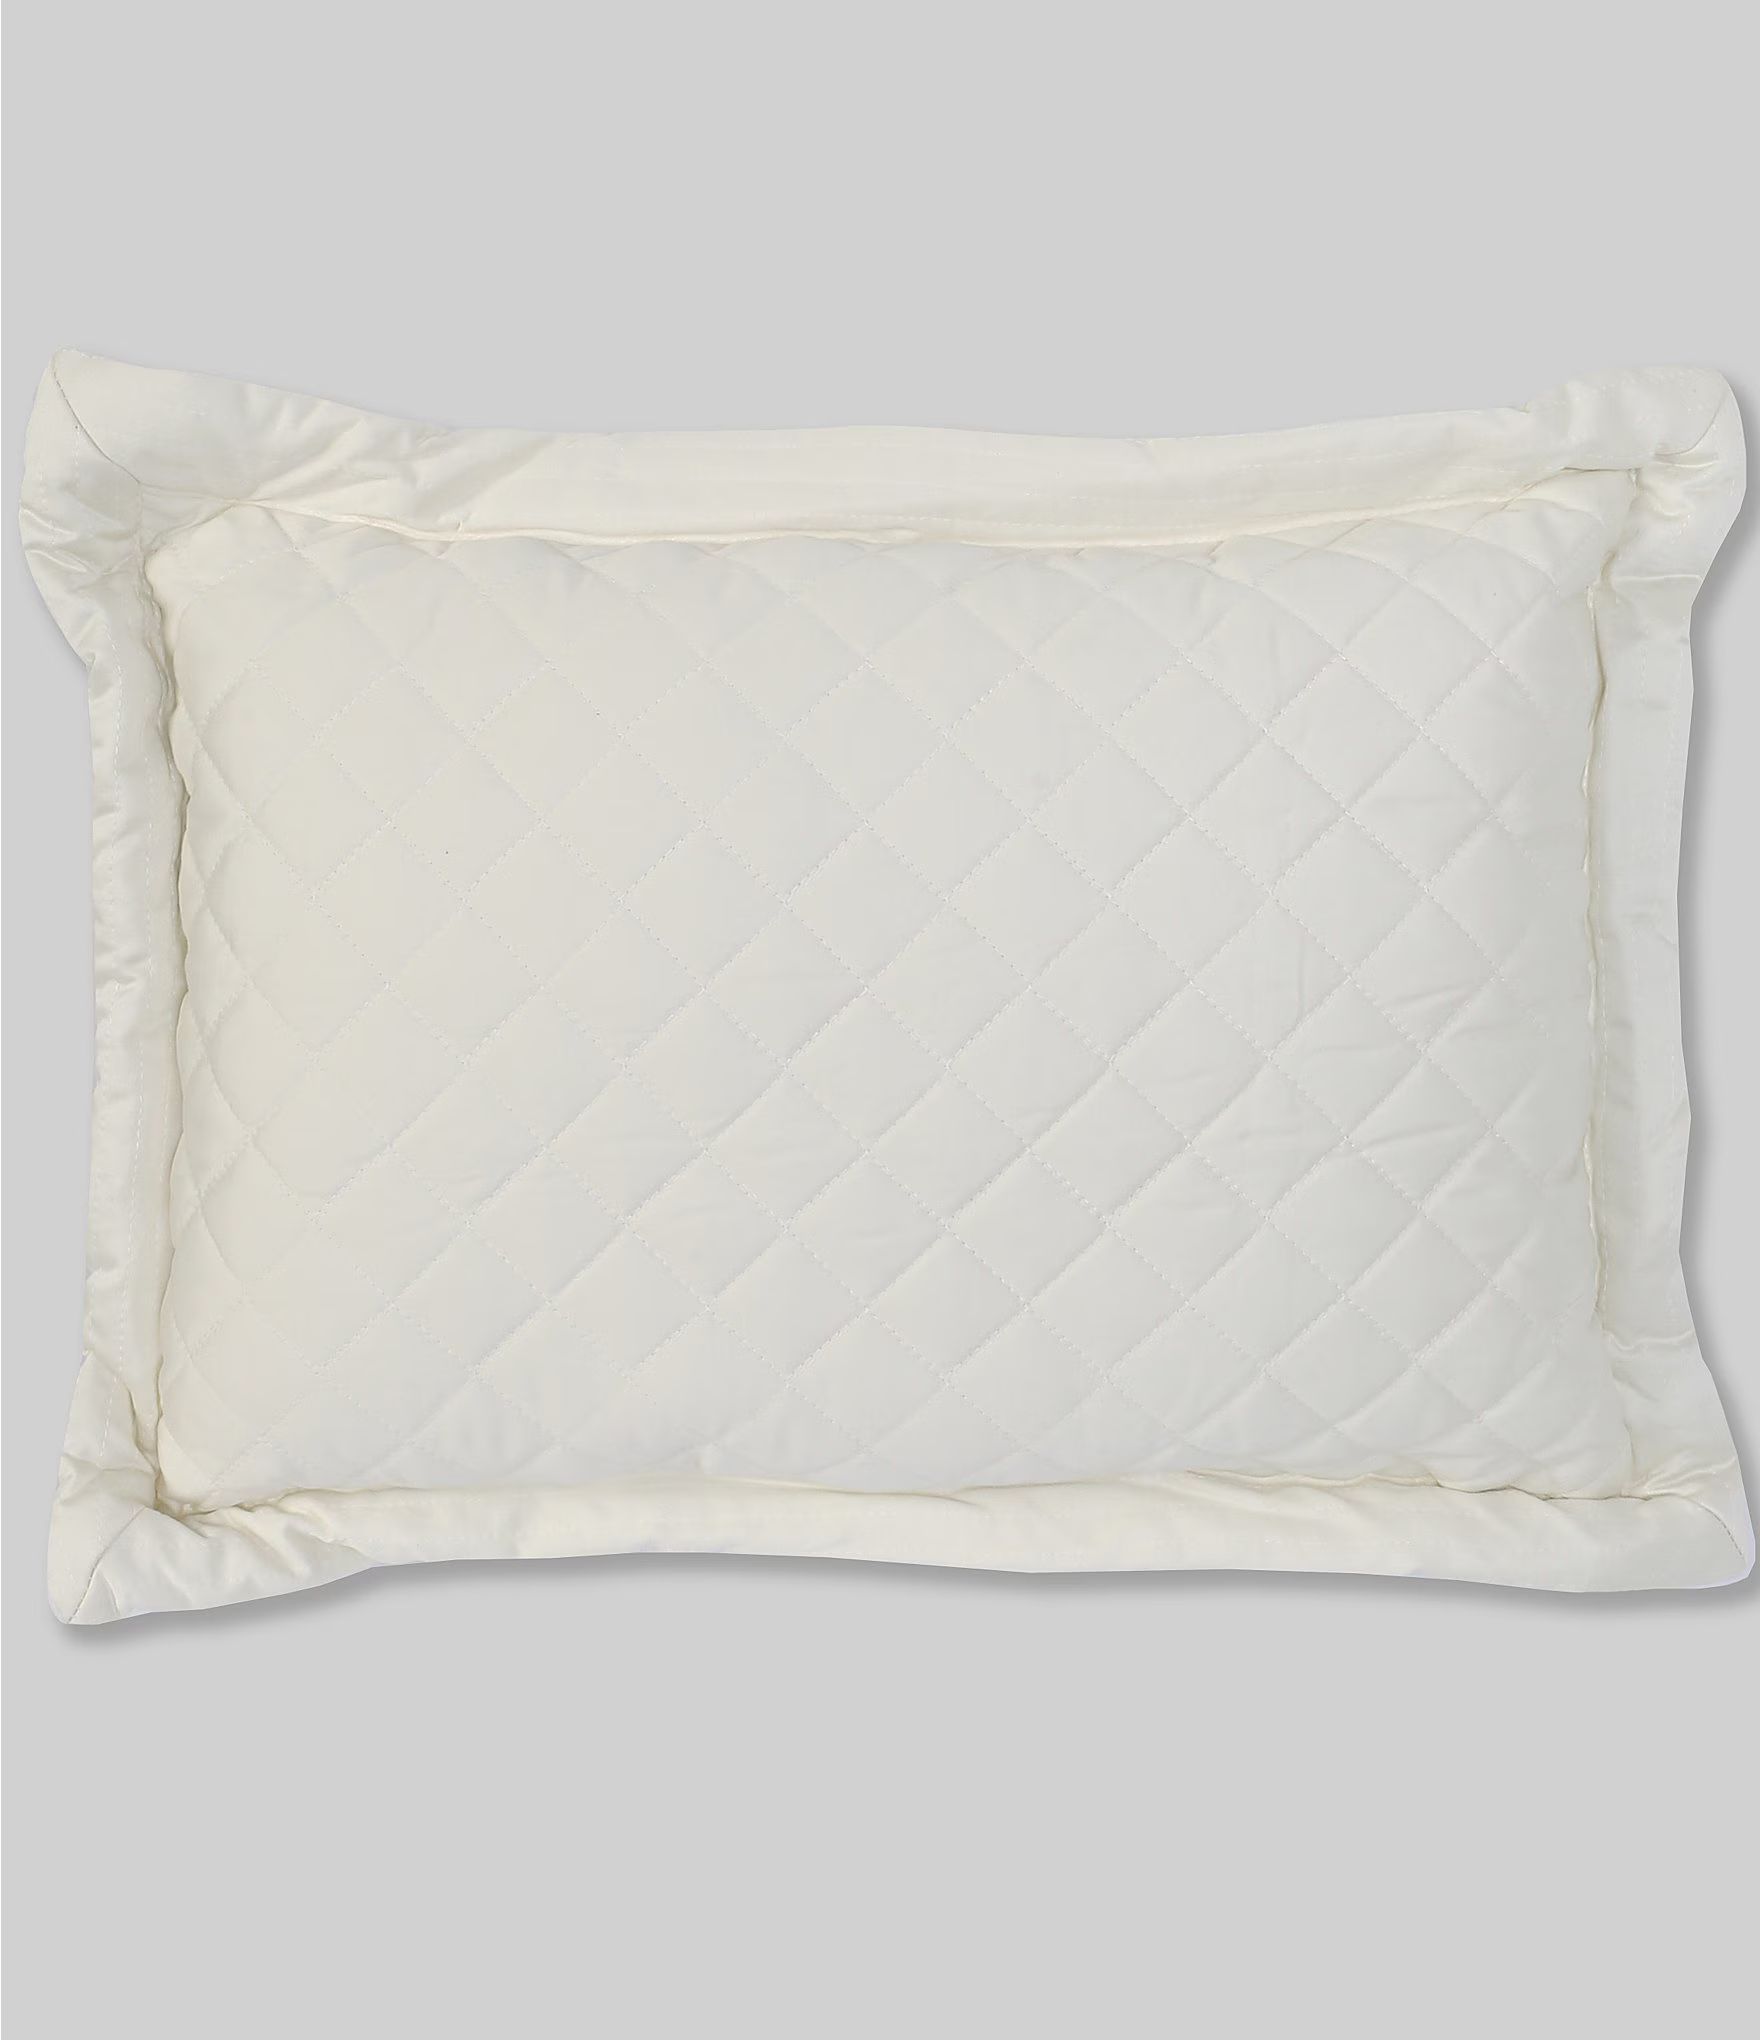 Belmont Diamond Patterned Breakfast Pillow | Dillards